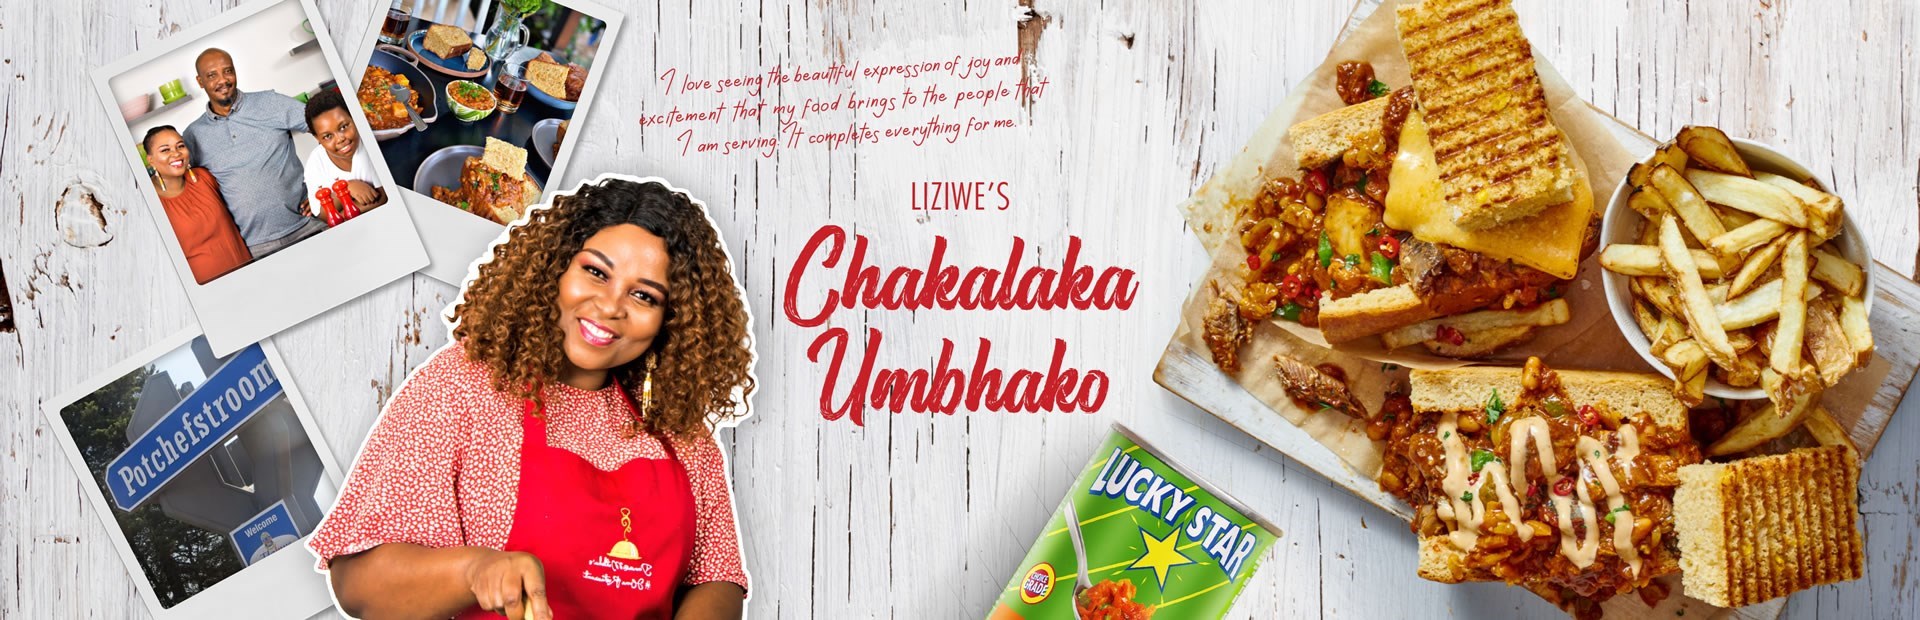 CHEF LIZIWE’S Chakalaka Umbhako